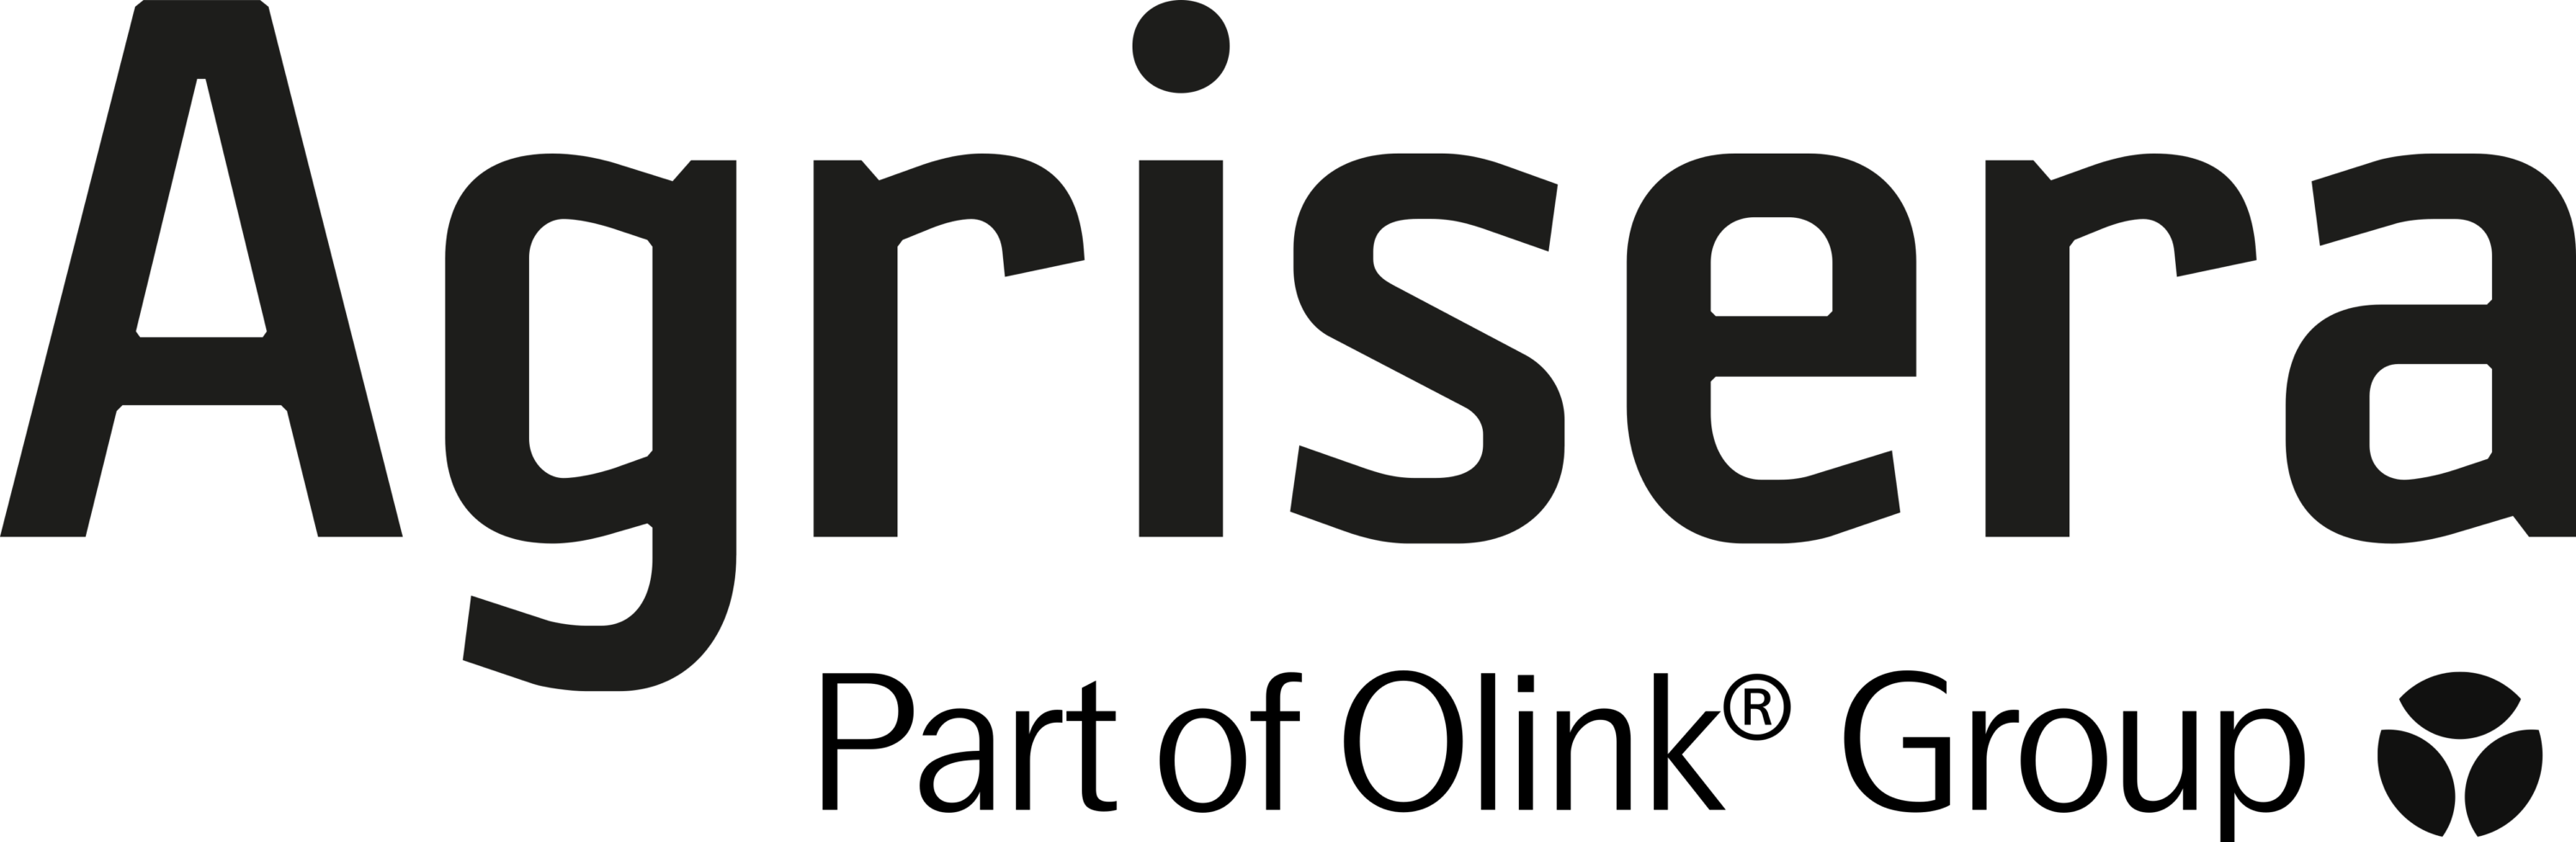 Agrisera Logo